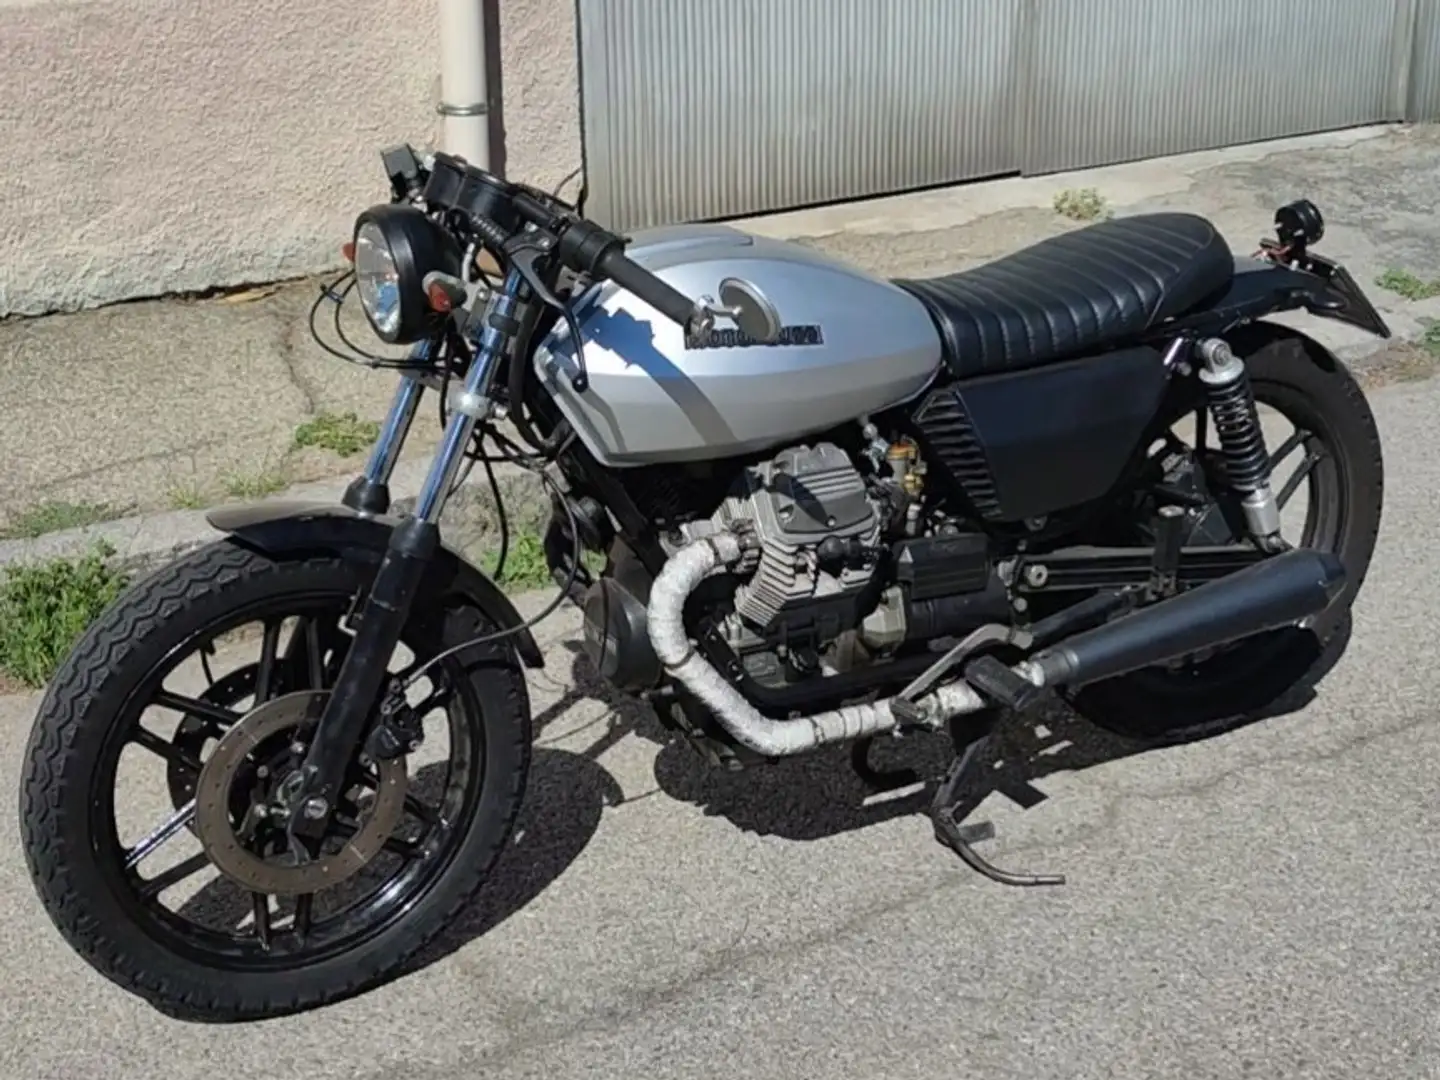 Moto Guzzi V 50 Plateado - 1